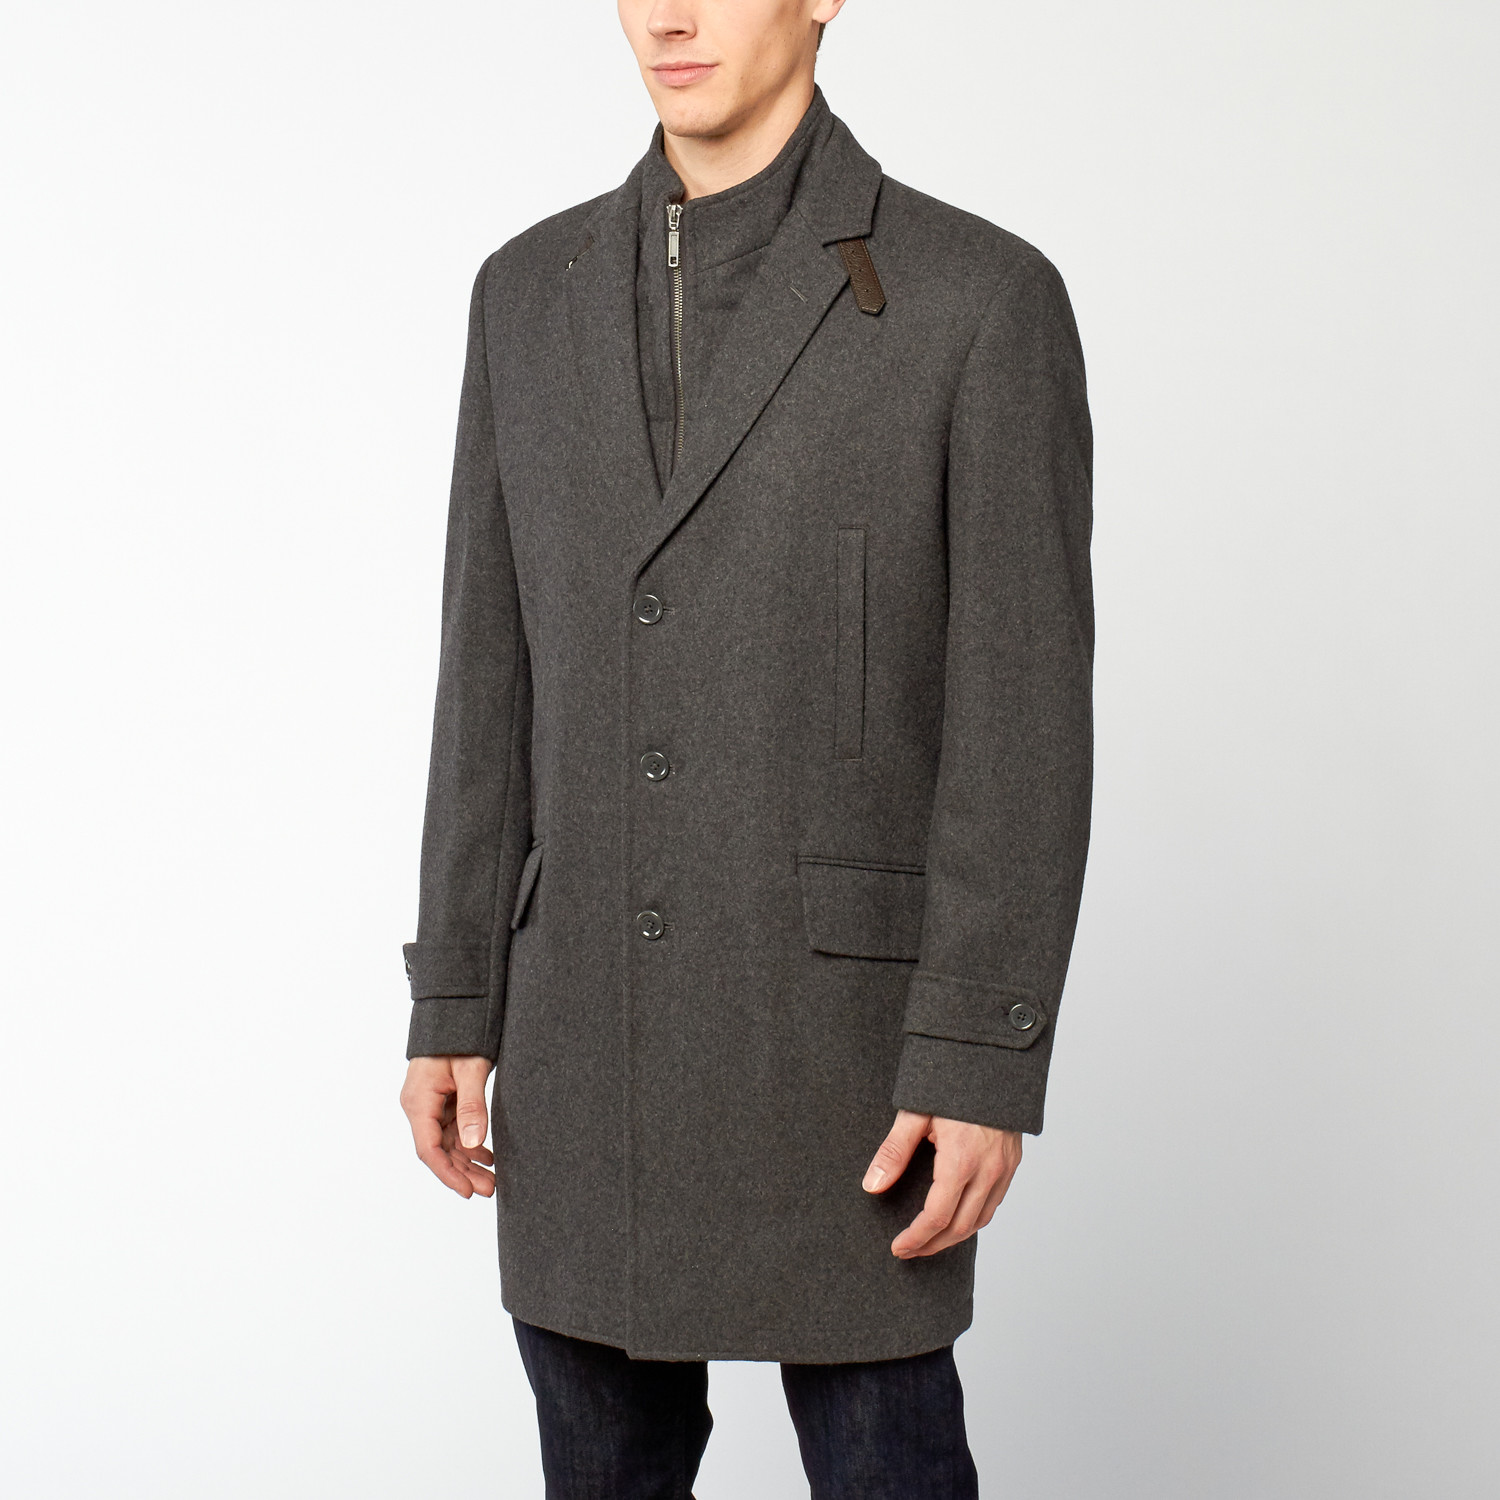 Zenbriele // Notch Lapel Jacket // Charcaol Grey (S) - Outerwear ...